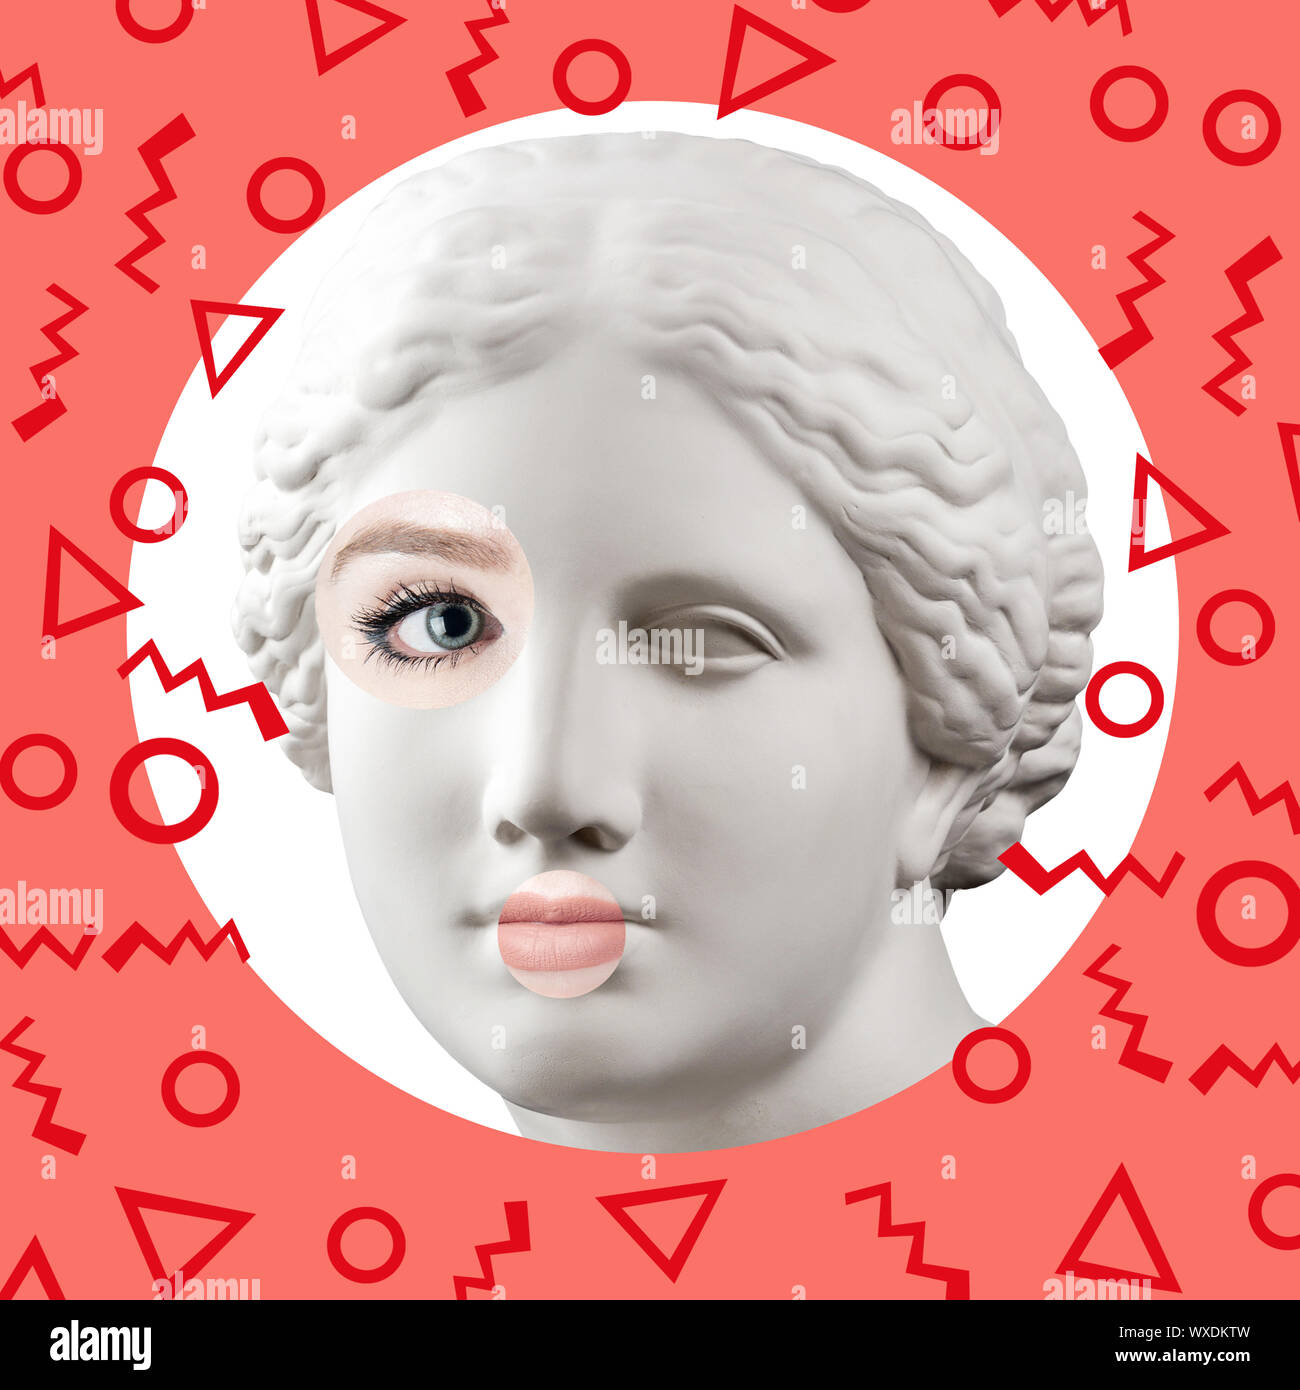 Zeitgenössische Kunst Poster mit antiken Statue der Venus Kopf und das Gesicht einer lebenden Frau. Stockfoto